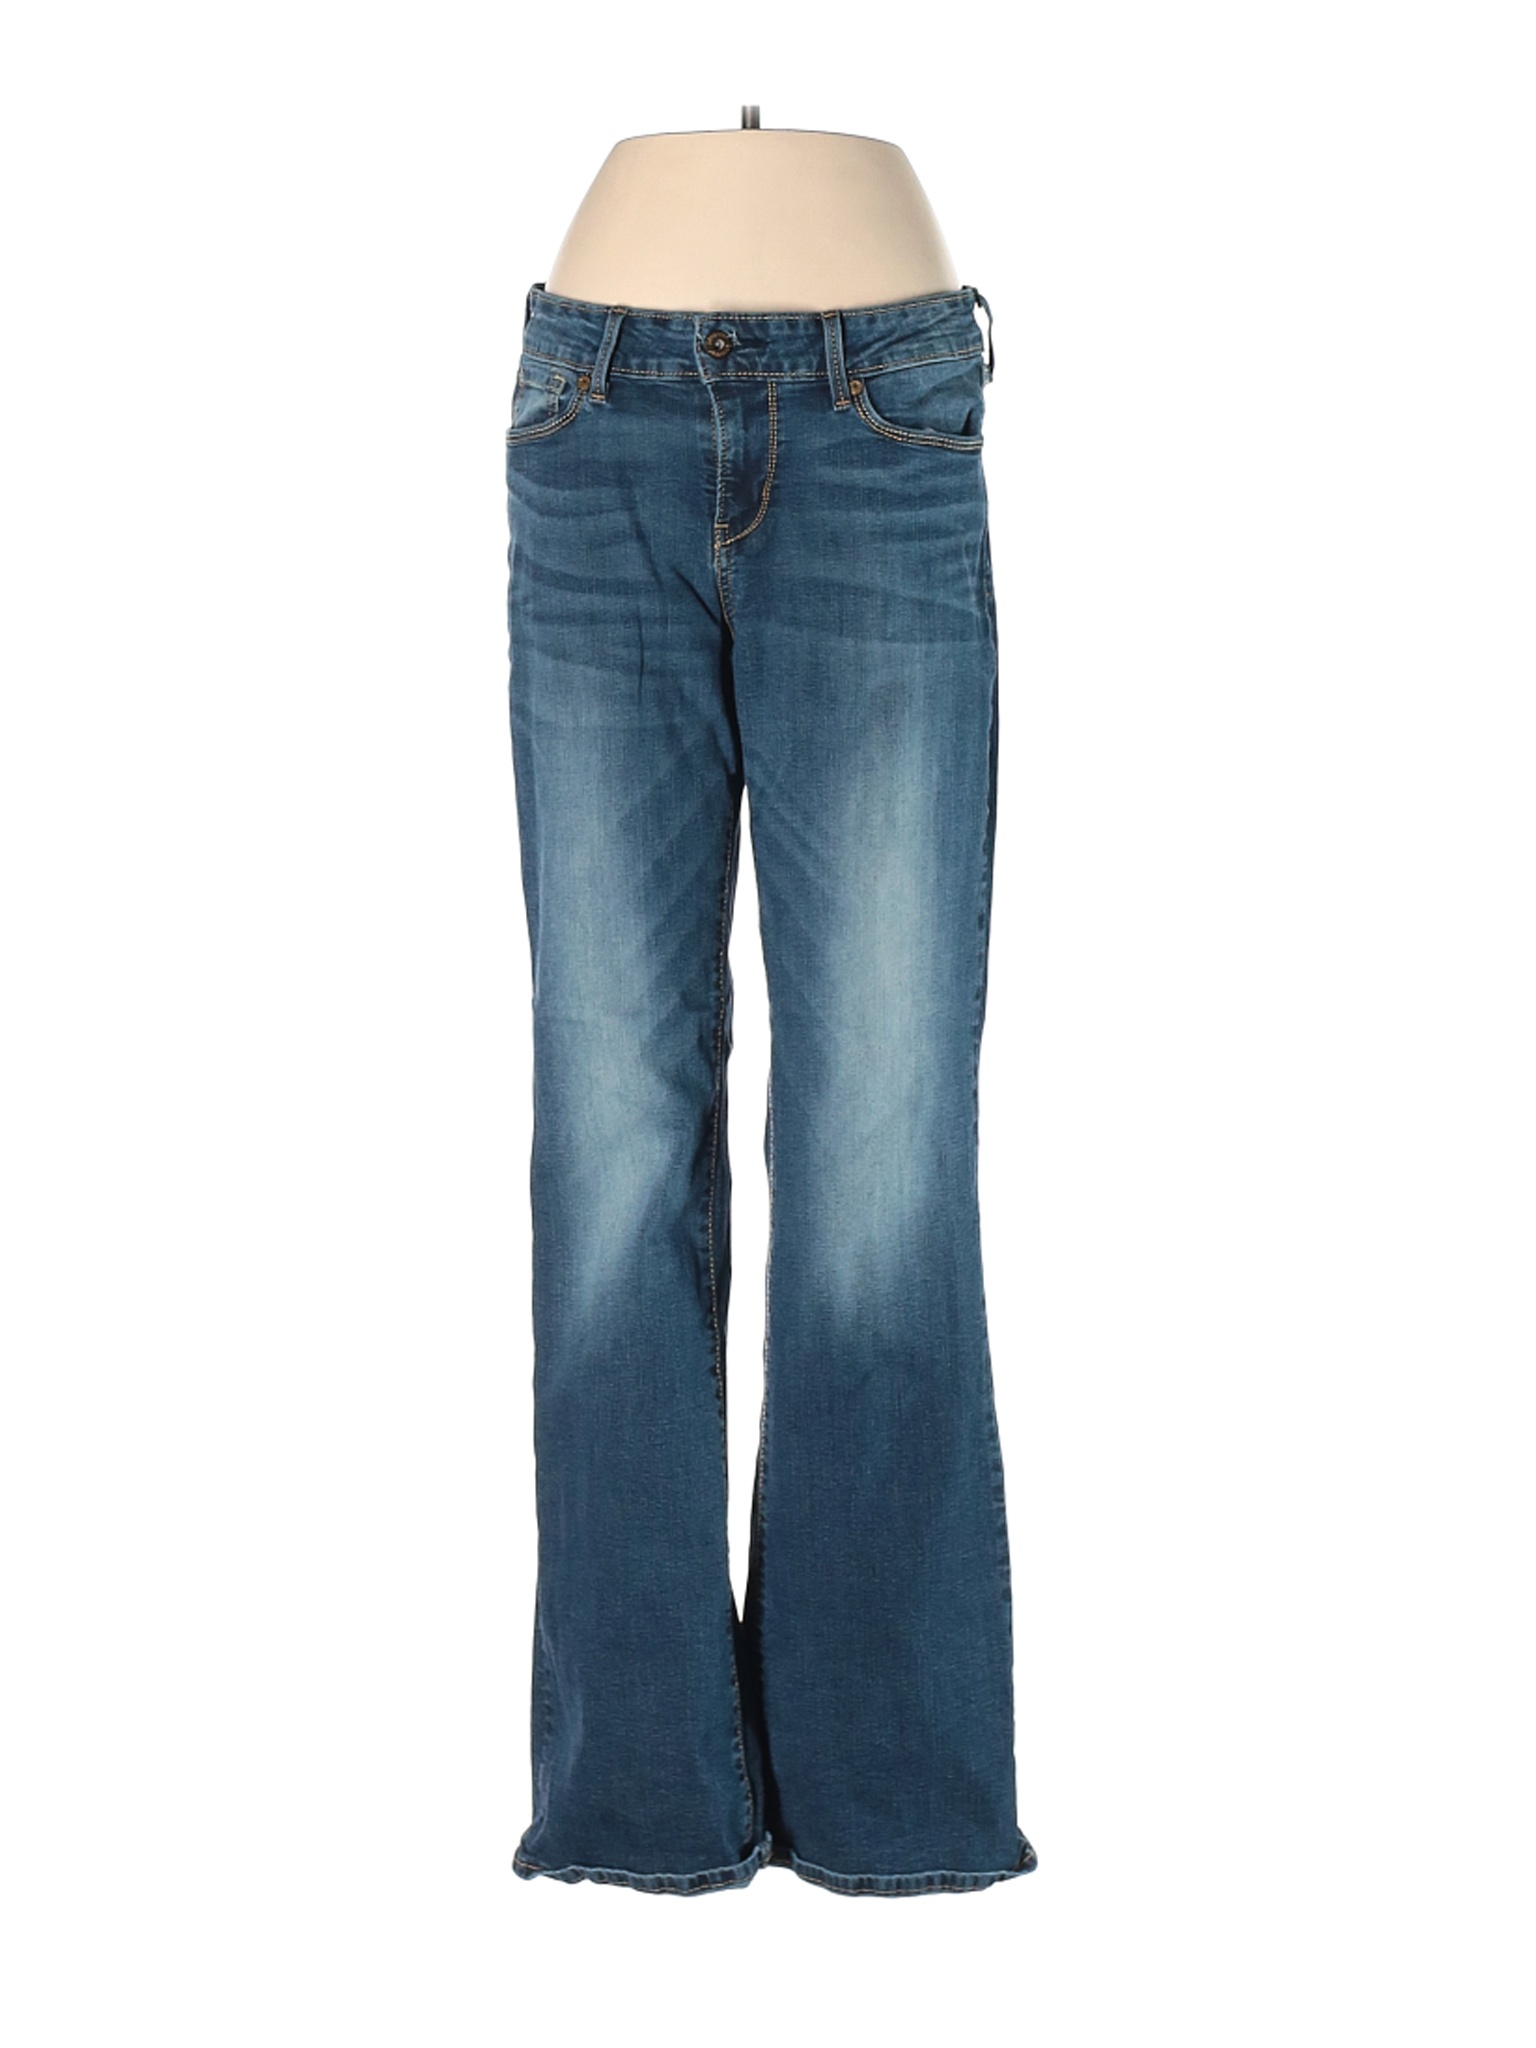 Denizen from Levi's Women Blue Jeans 28W | eBay